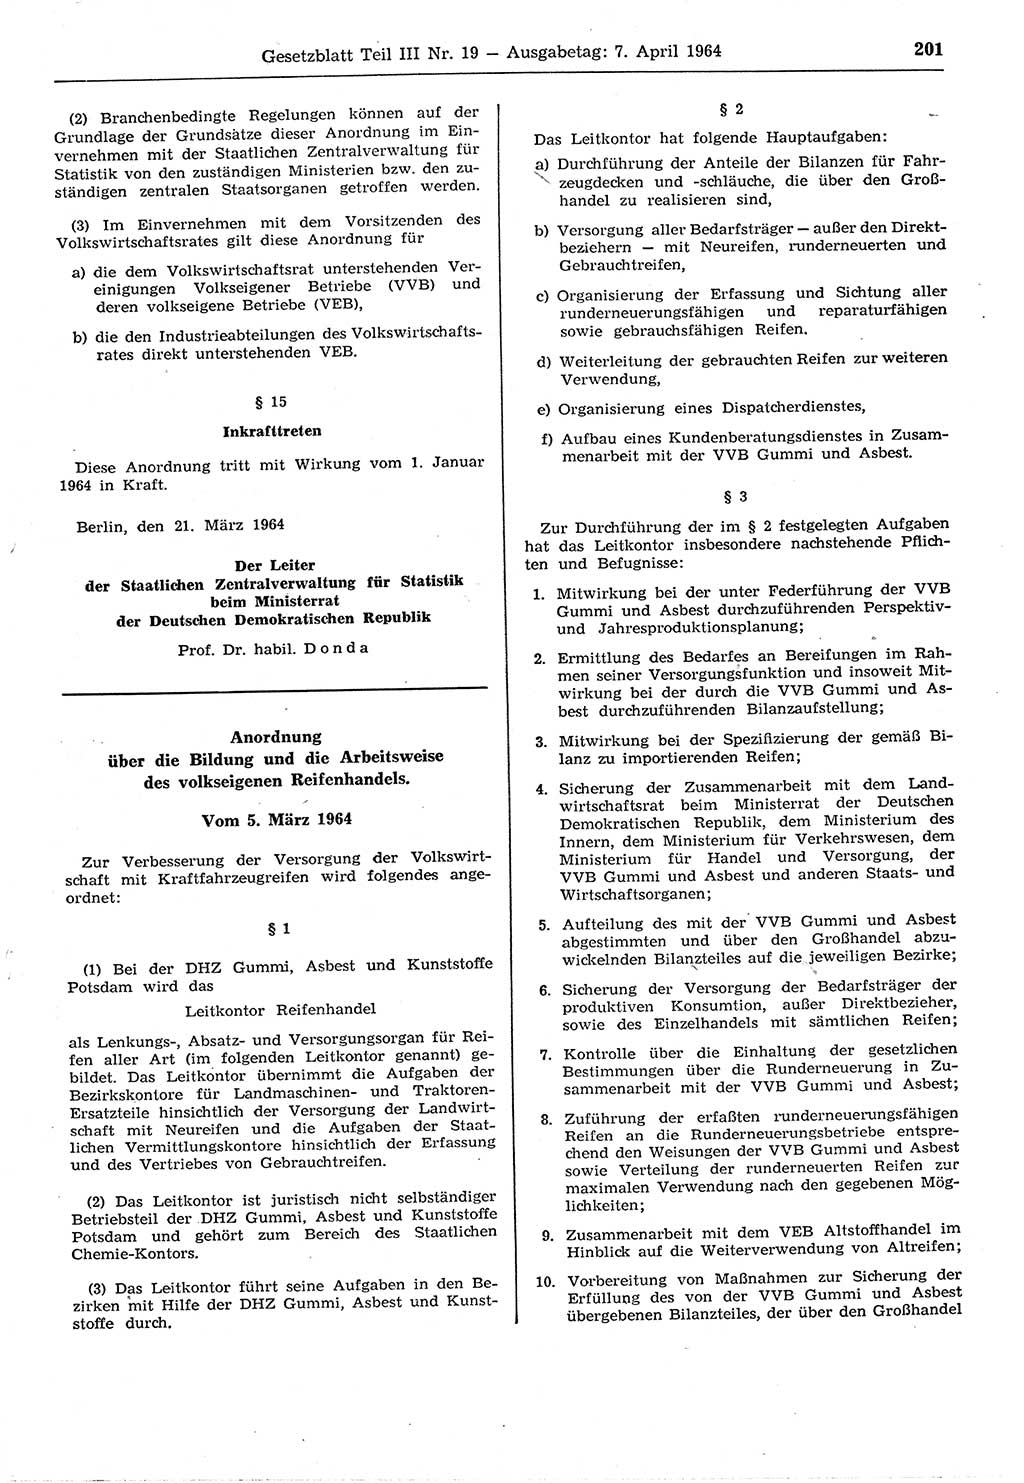 Gesetzblatt (GBl.) der Deutschen Demokratischen Republik (DDR) Teil ⅠⅠⅠ 1964, Seite 201 (GBl. DDR ⅠⅠⅠ 1964, S. 201)